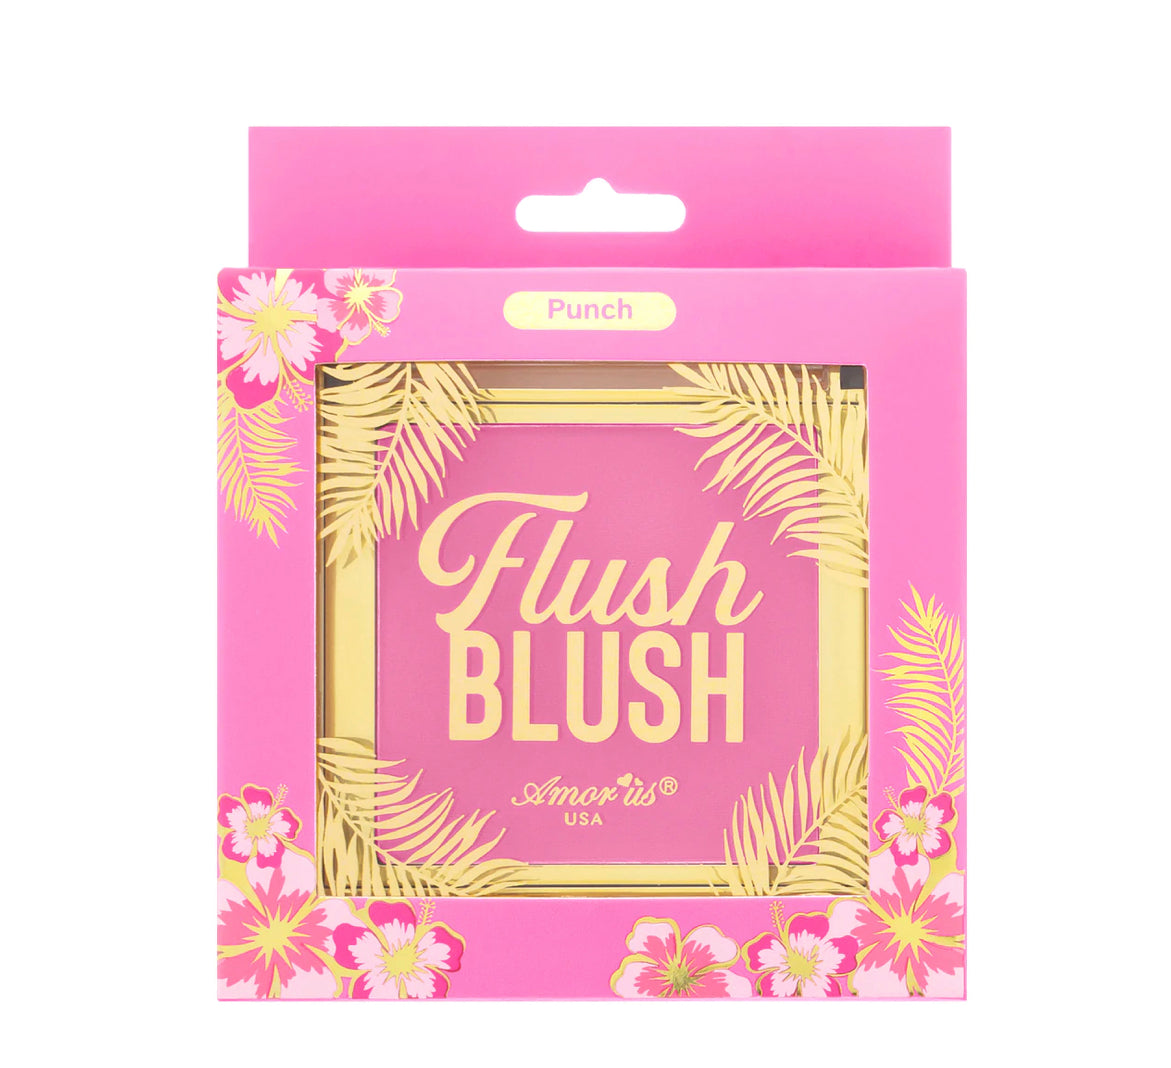 PUNCH - FLUSH BLUSH POWDER BLUSH